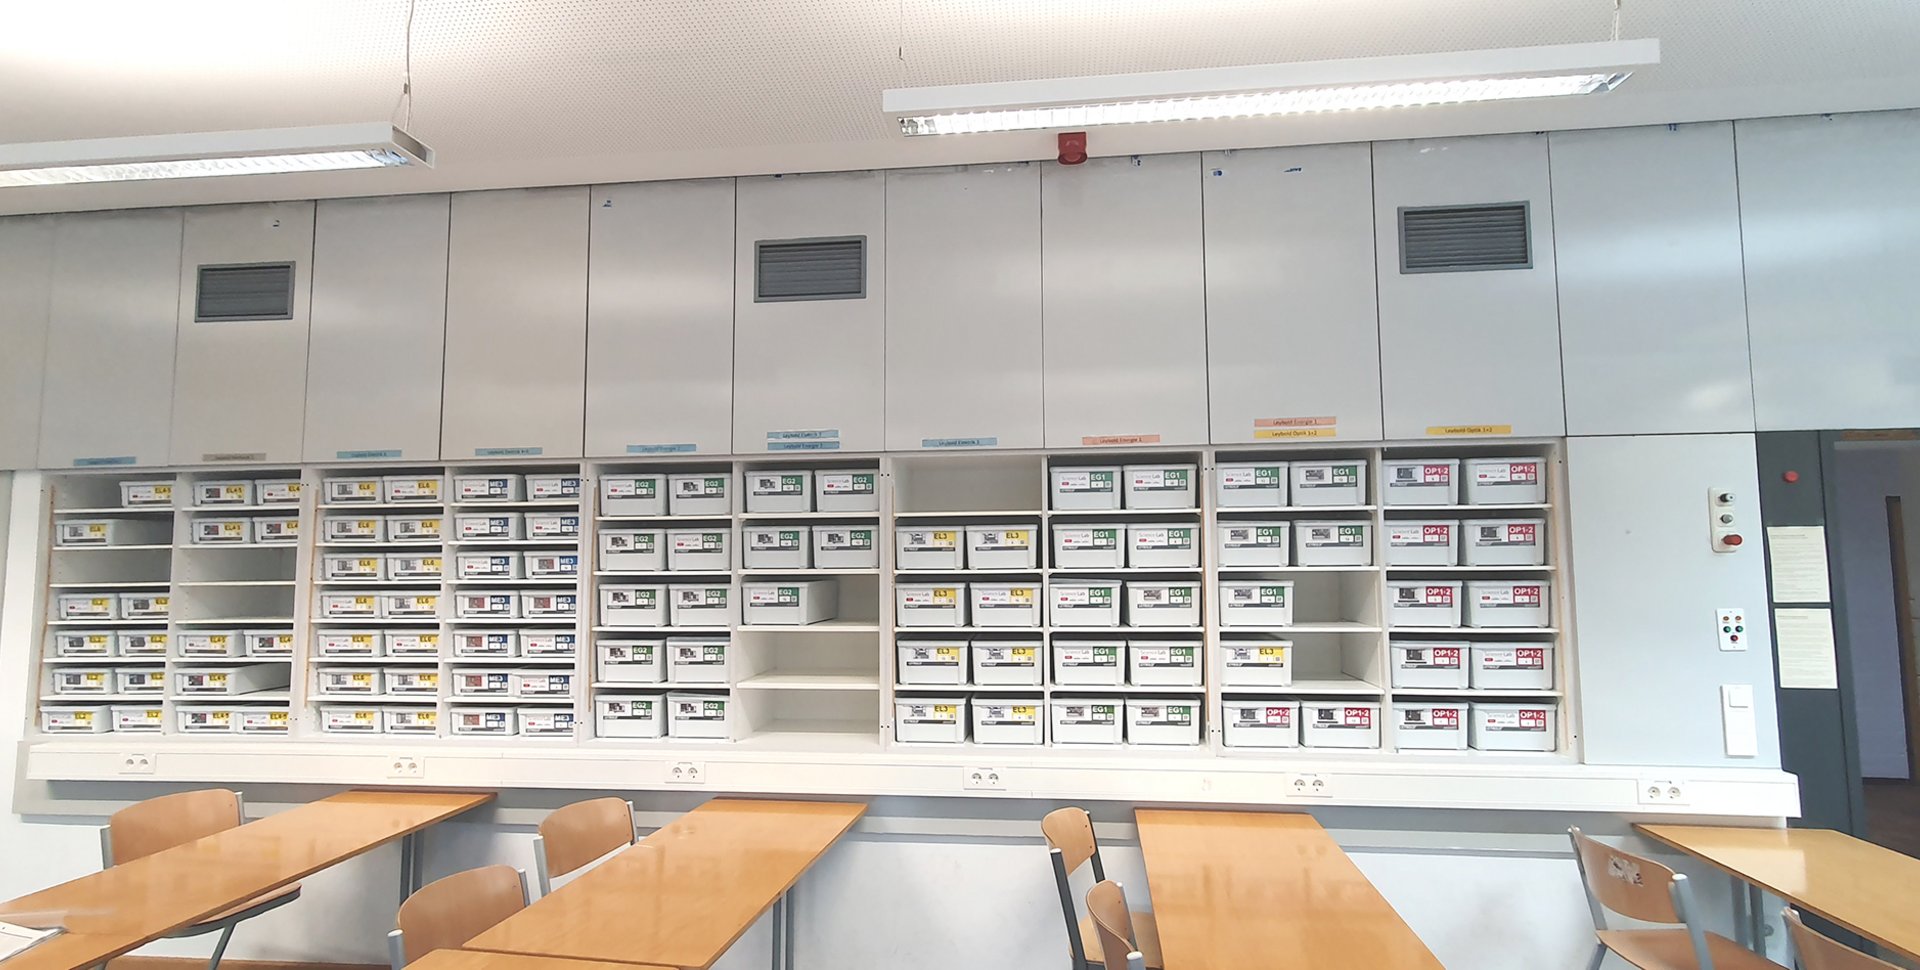 Das Willi-Graf-Gymnasium in München zeigt die Schülerversuche-Sammlung Science Lab im Physik-Unterrichtsraum. Die Schübe sind stapelbar für eine einfache Aufbewahrung und den Transport.